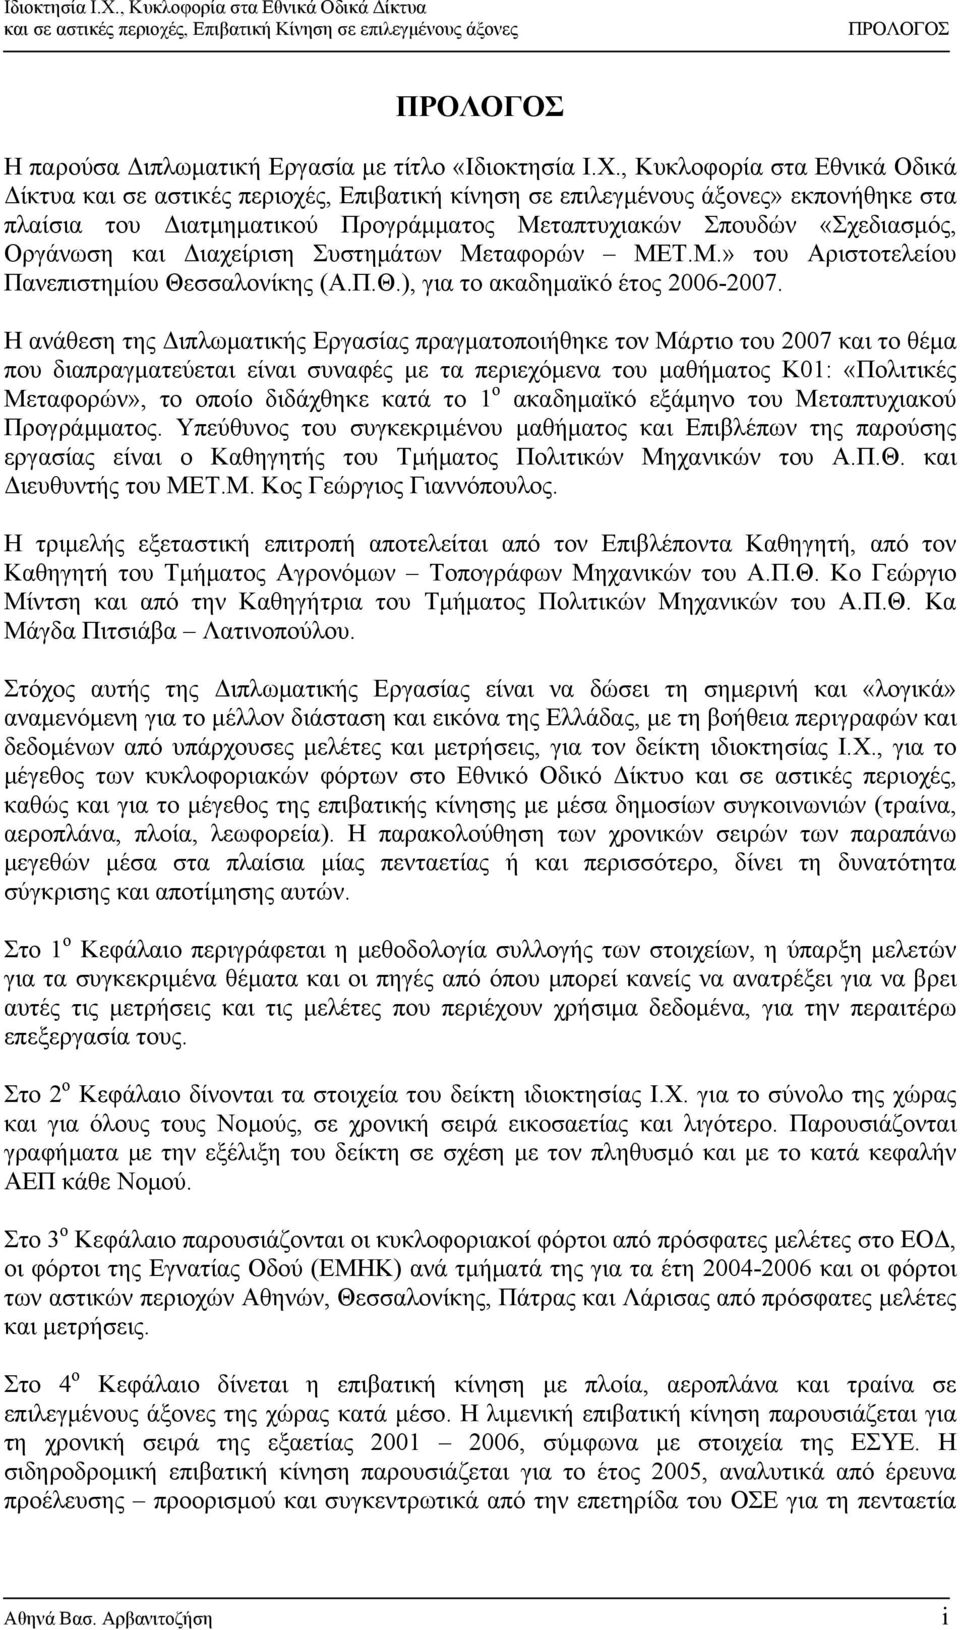 Οργάνωση και Διαχείριση Συστημάτων Μεταφορών ΜΕΤ.Μ.» του Αριστοτελείου Πανεπιστημίου Θεσσαλονίκης (Α.Π.Θ.), για το ακαδημαϊκό έτος 2006-2007.